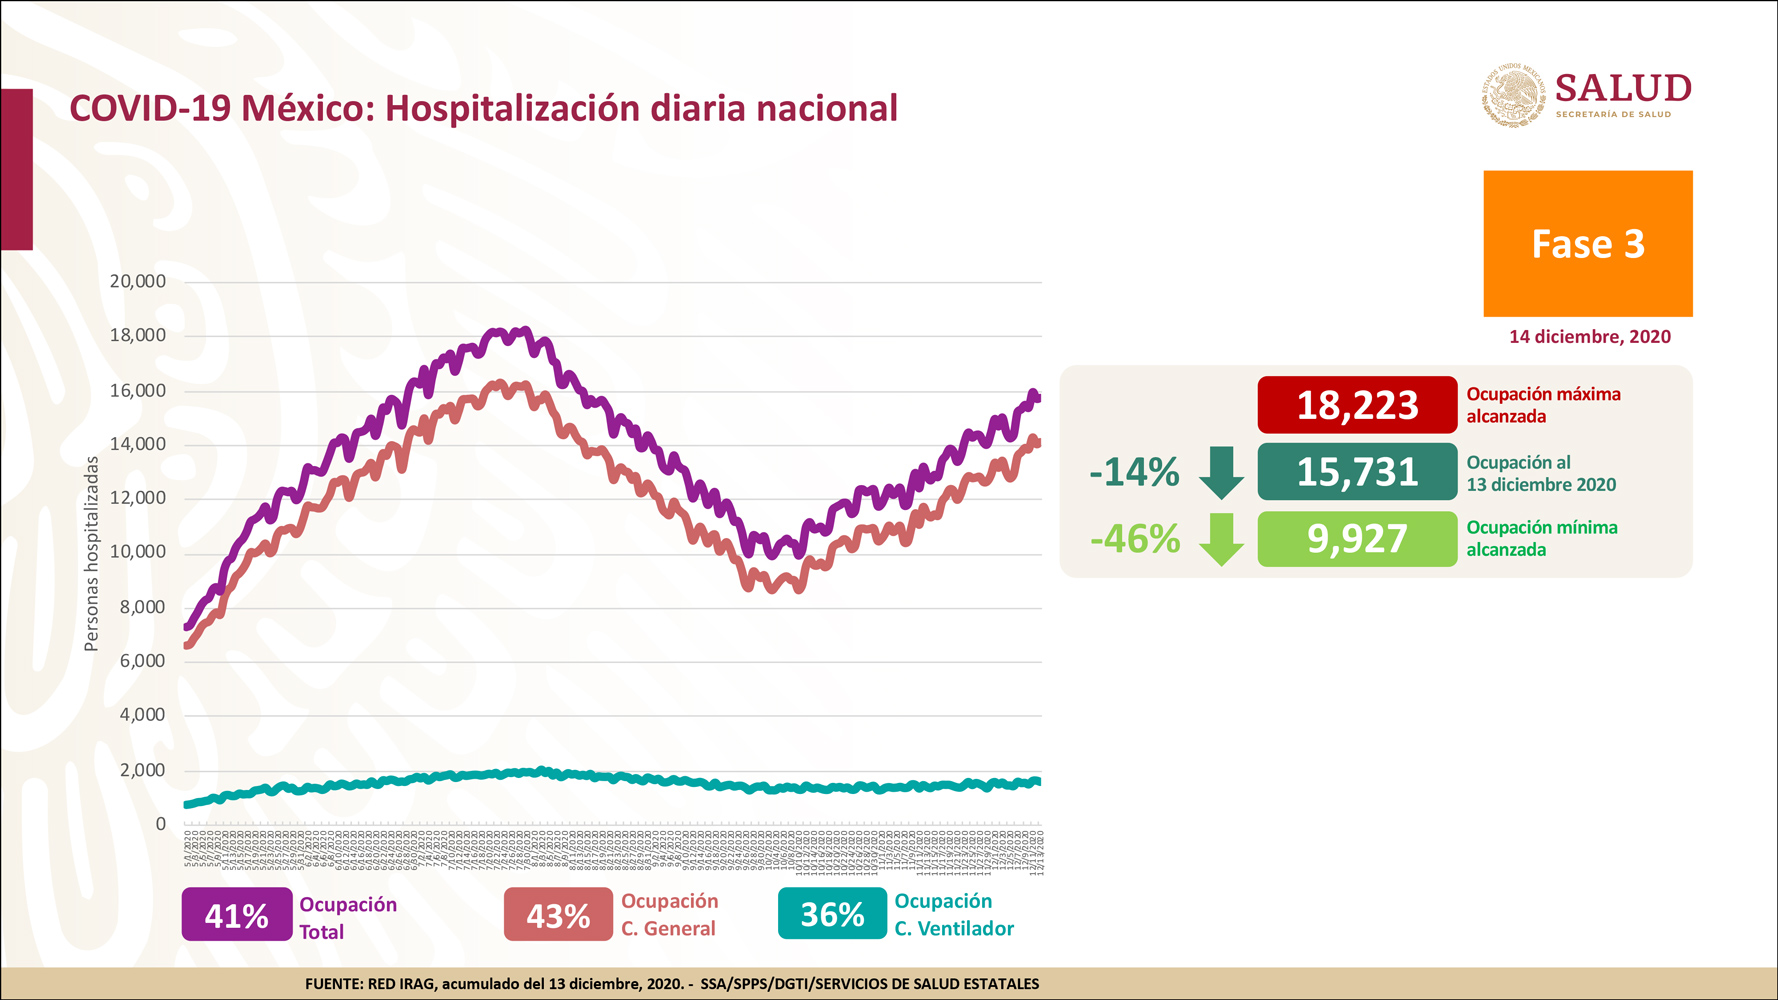 A nivel nacional, la ocupación total de camas para atender a pacientes con COVID-19 es de 41% (Foto: Ssa)